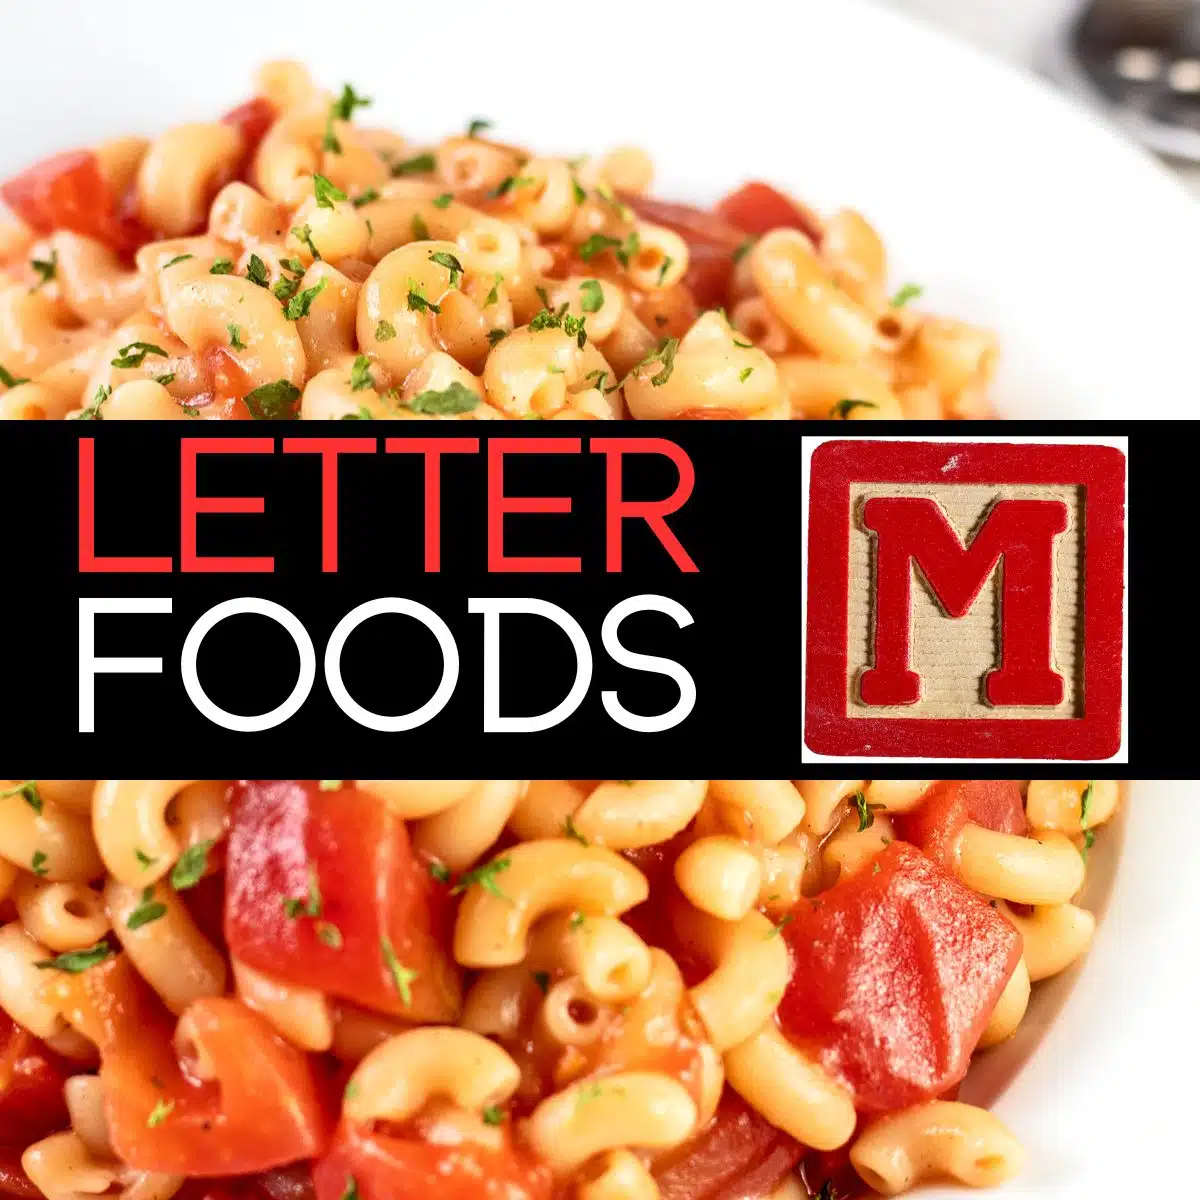 Image carrée pour les aliments commençant par la lettre M, montrant des macaronis.